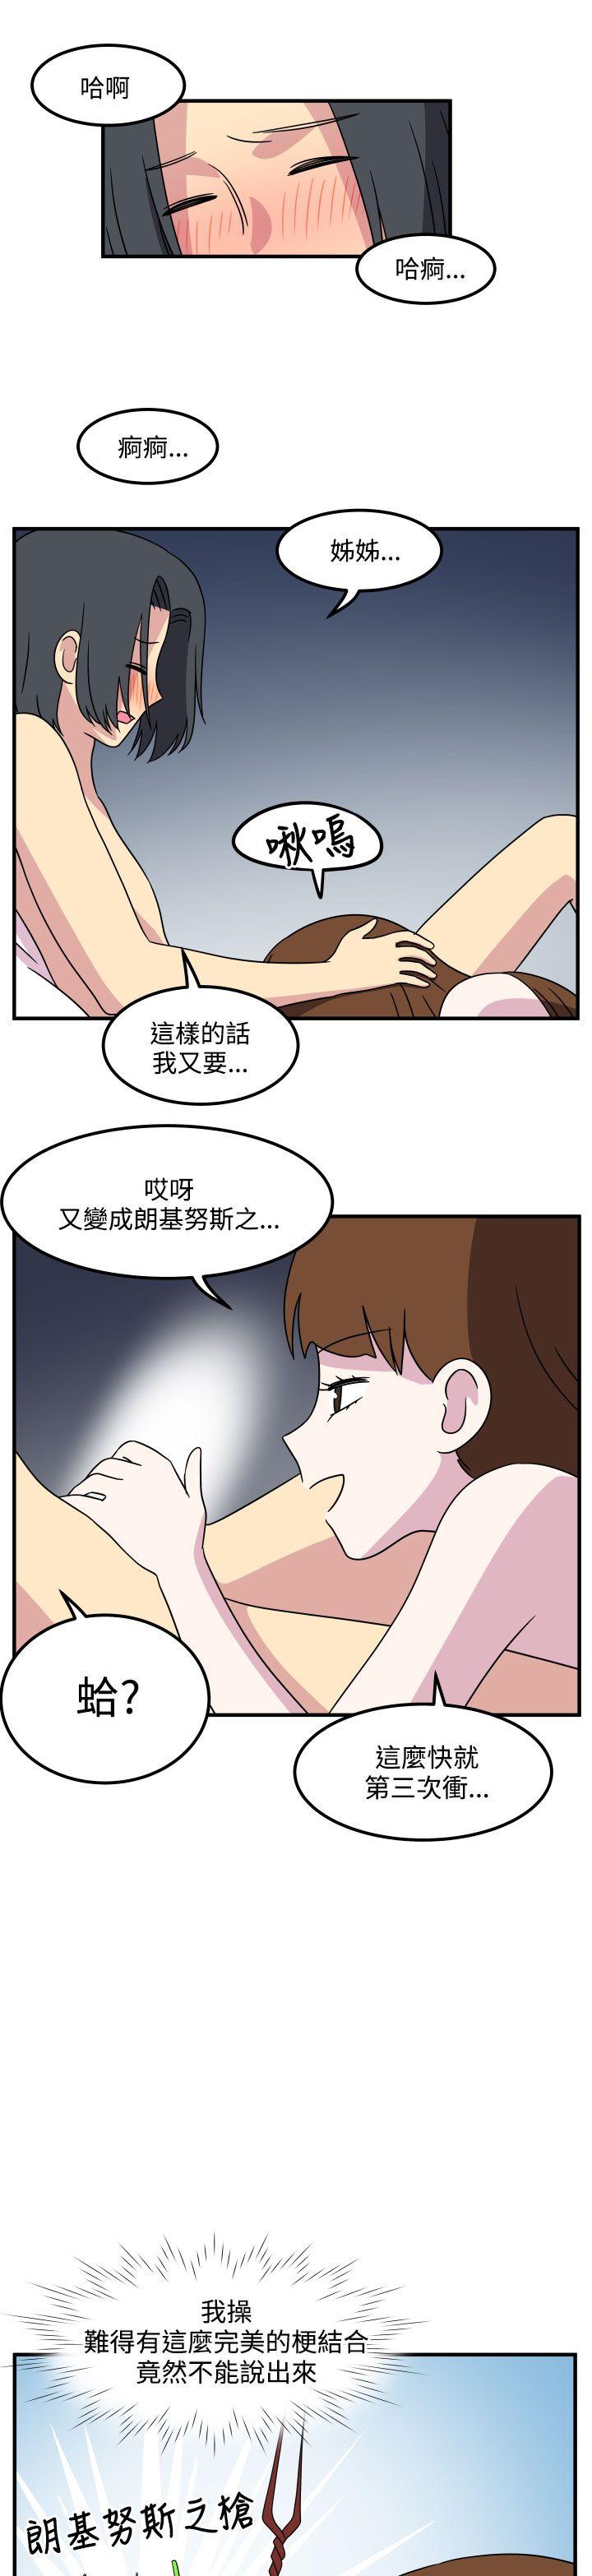 韩国污漫画 腹黑女的異想世界 最终话 9